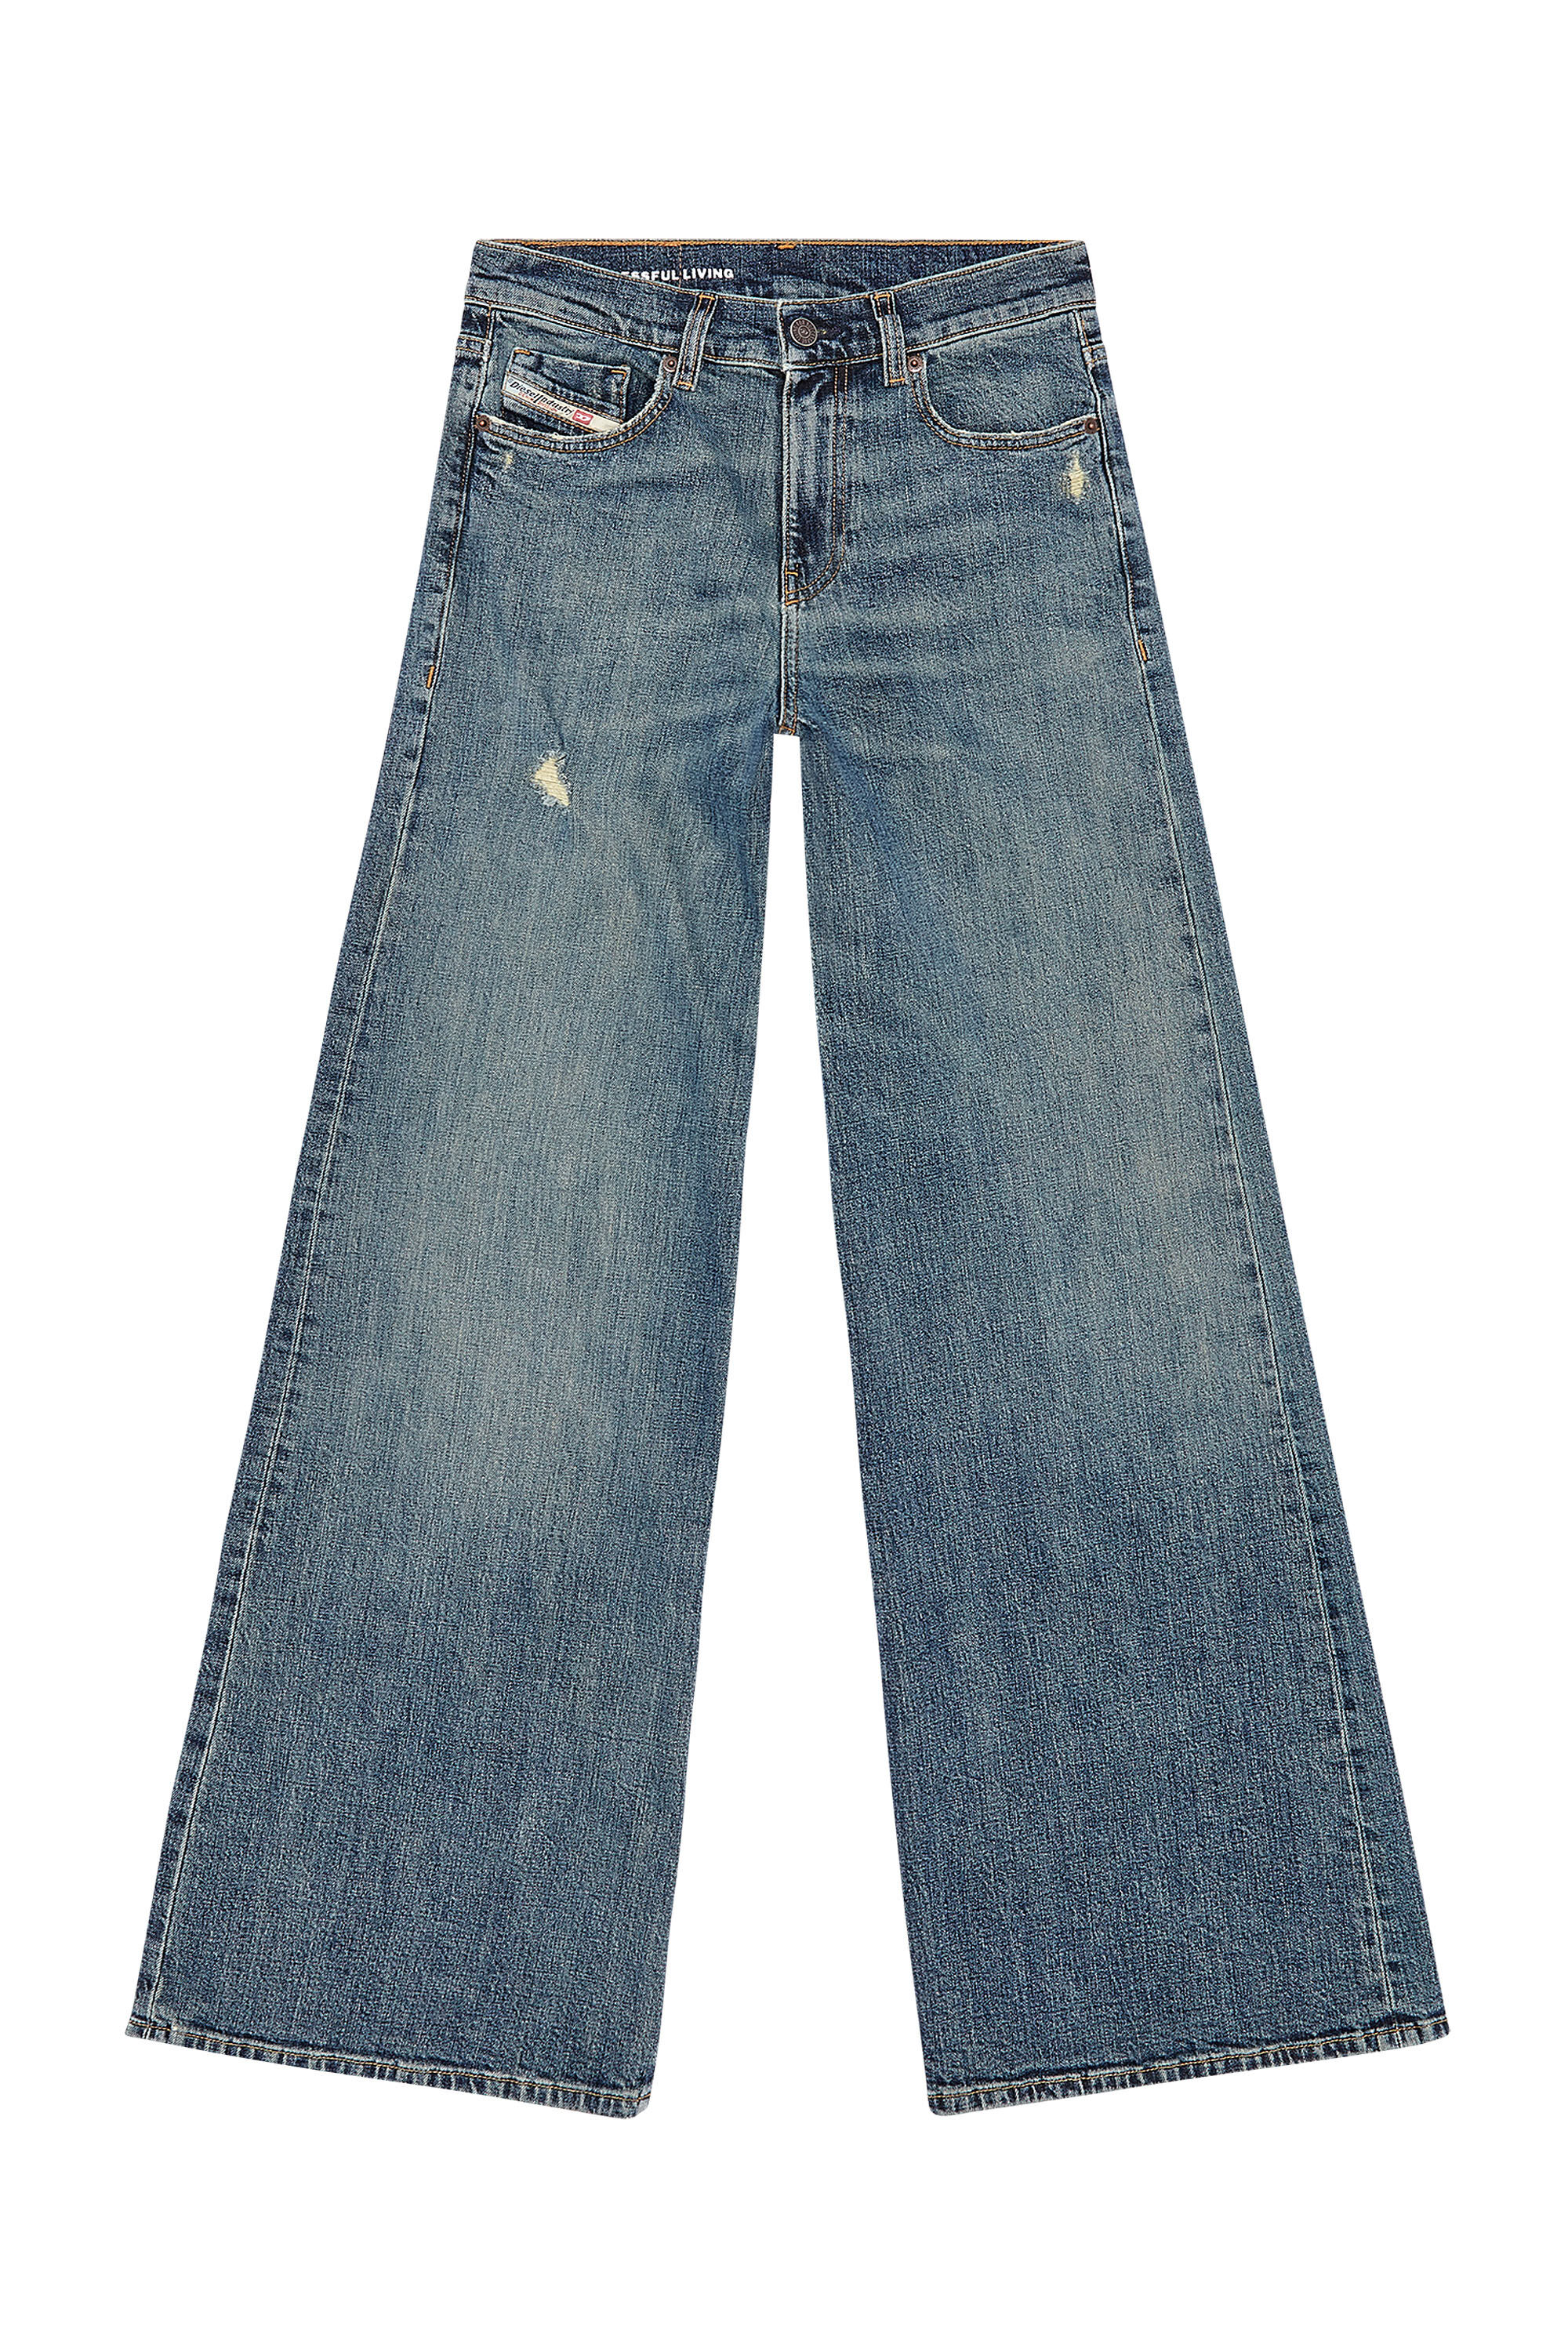 JB Non Distressed Capri Jeans, LONG – Jaxe + Grace Boutique